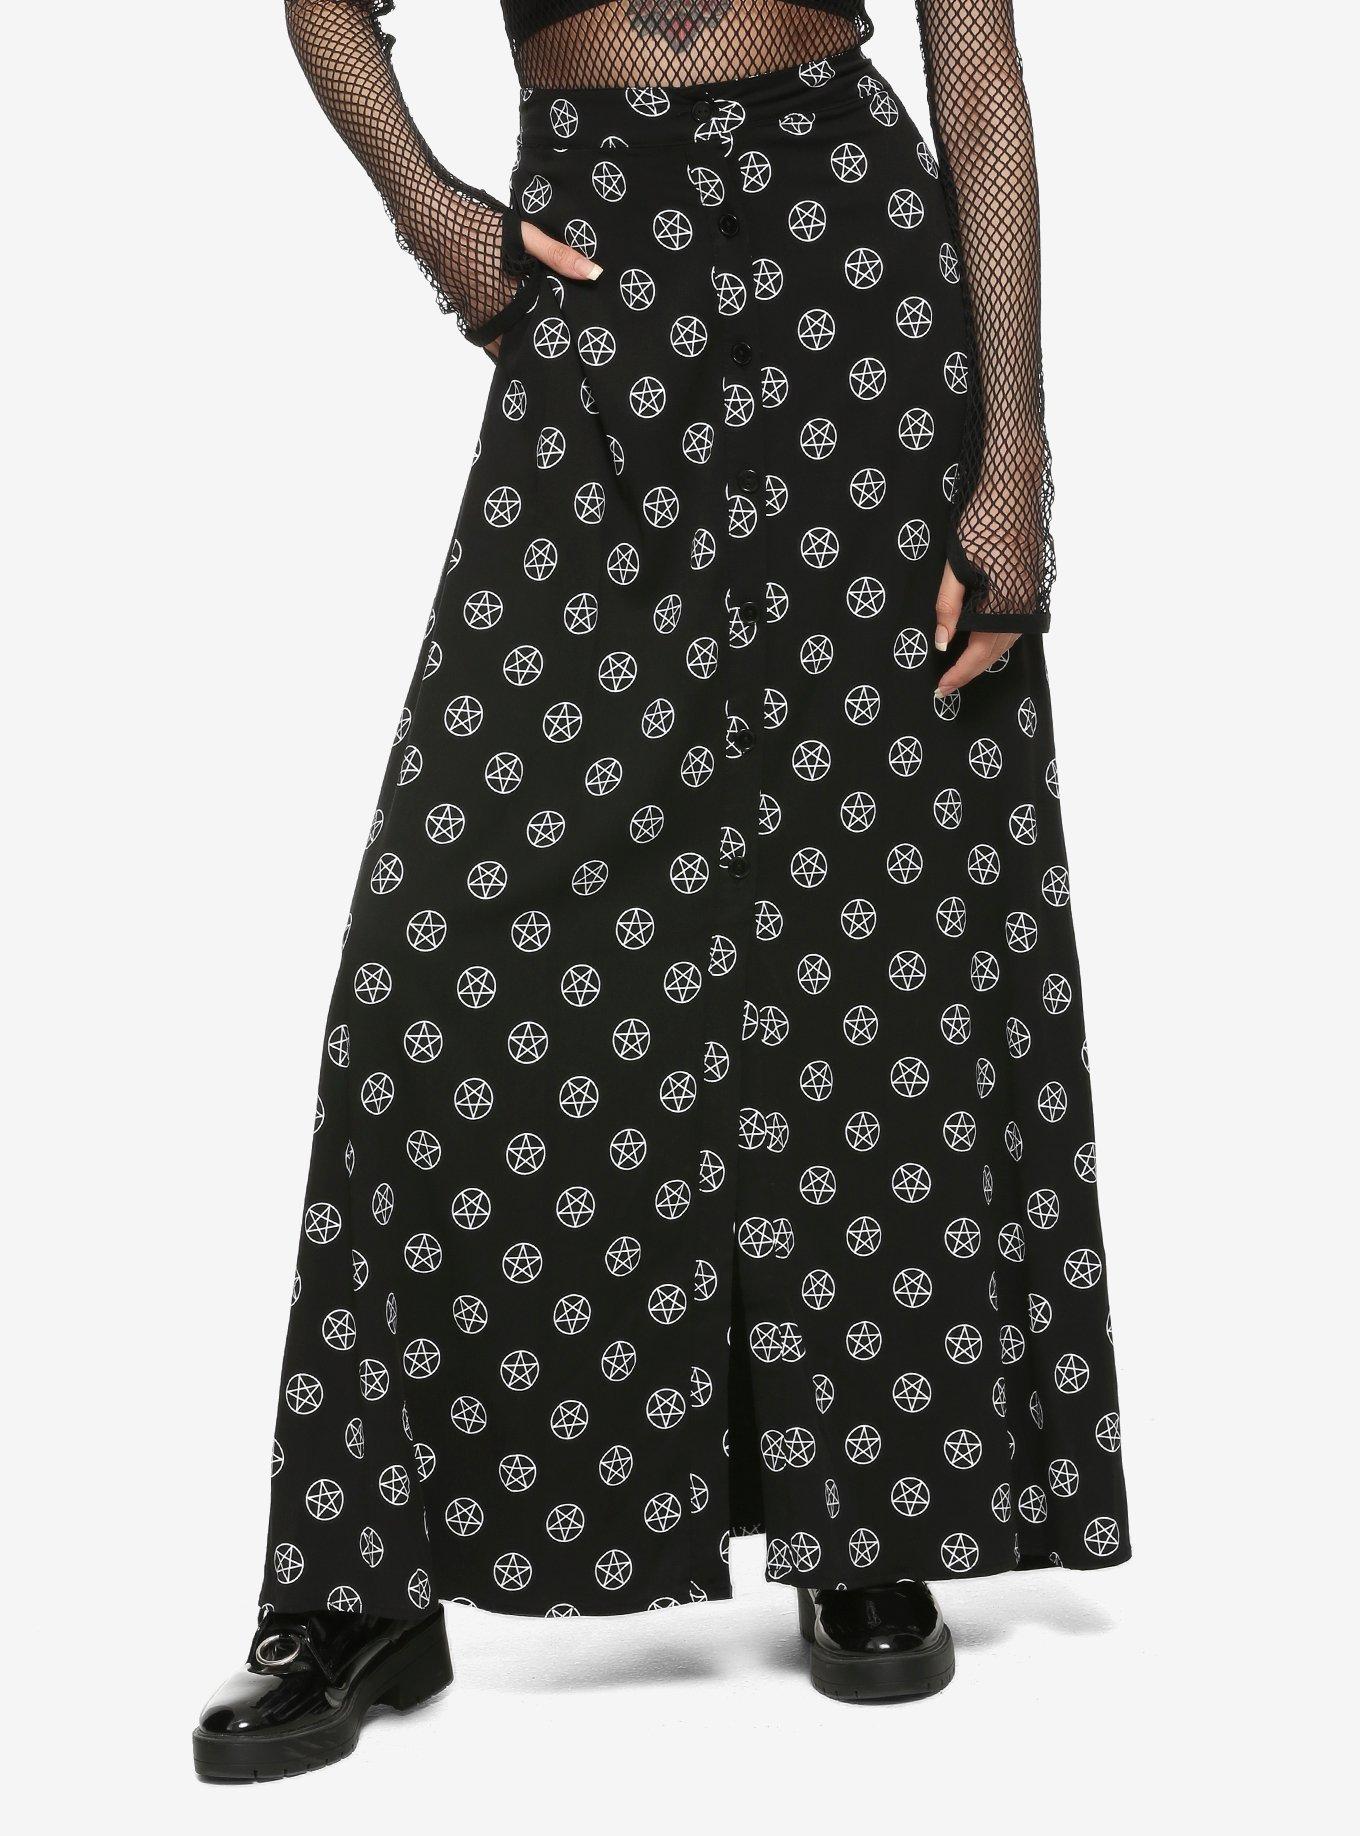 Black & White Pentagrams Maxi Skirt, BLACK, hi-res